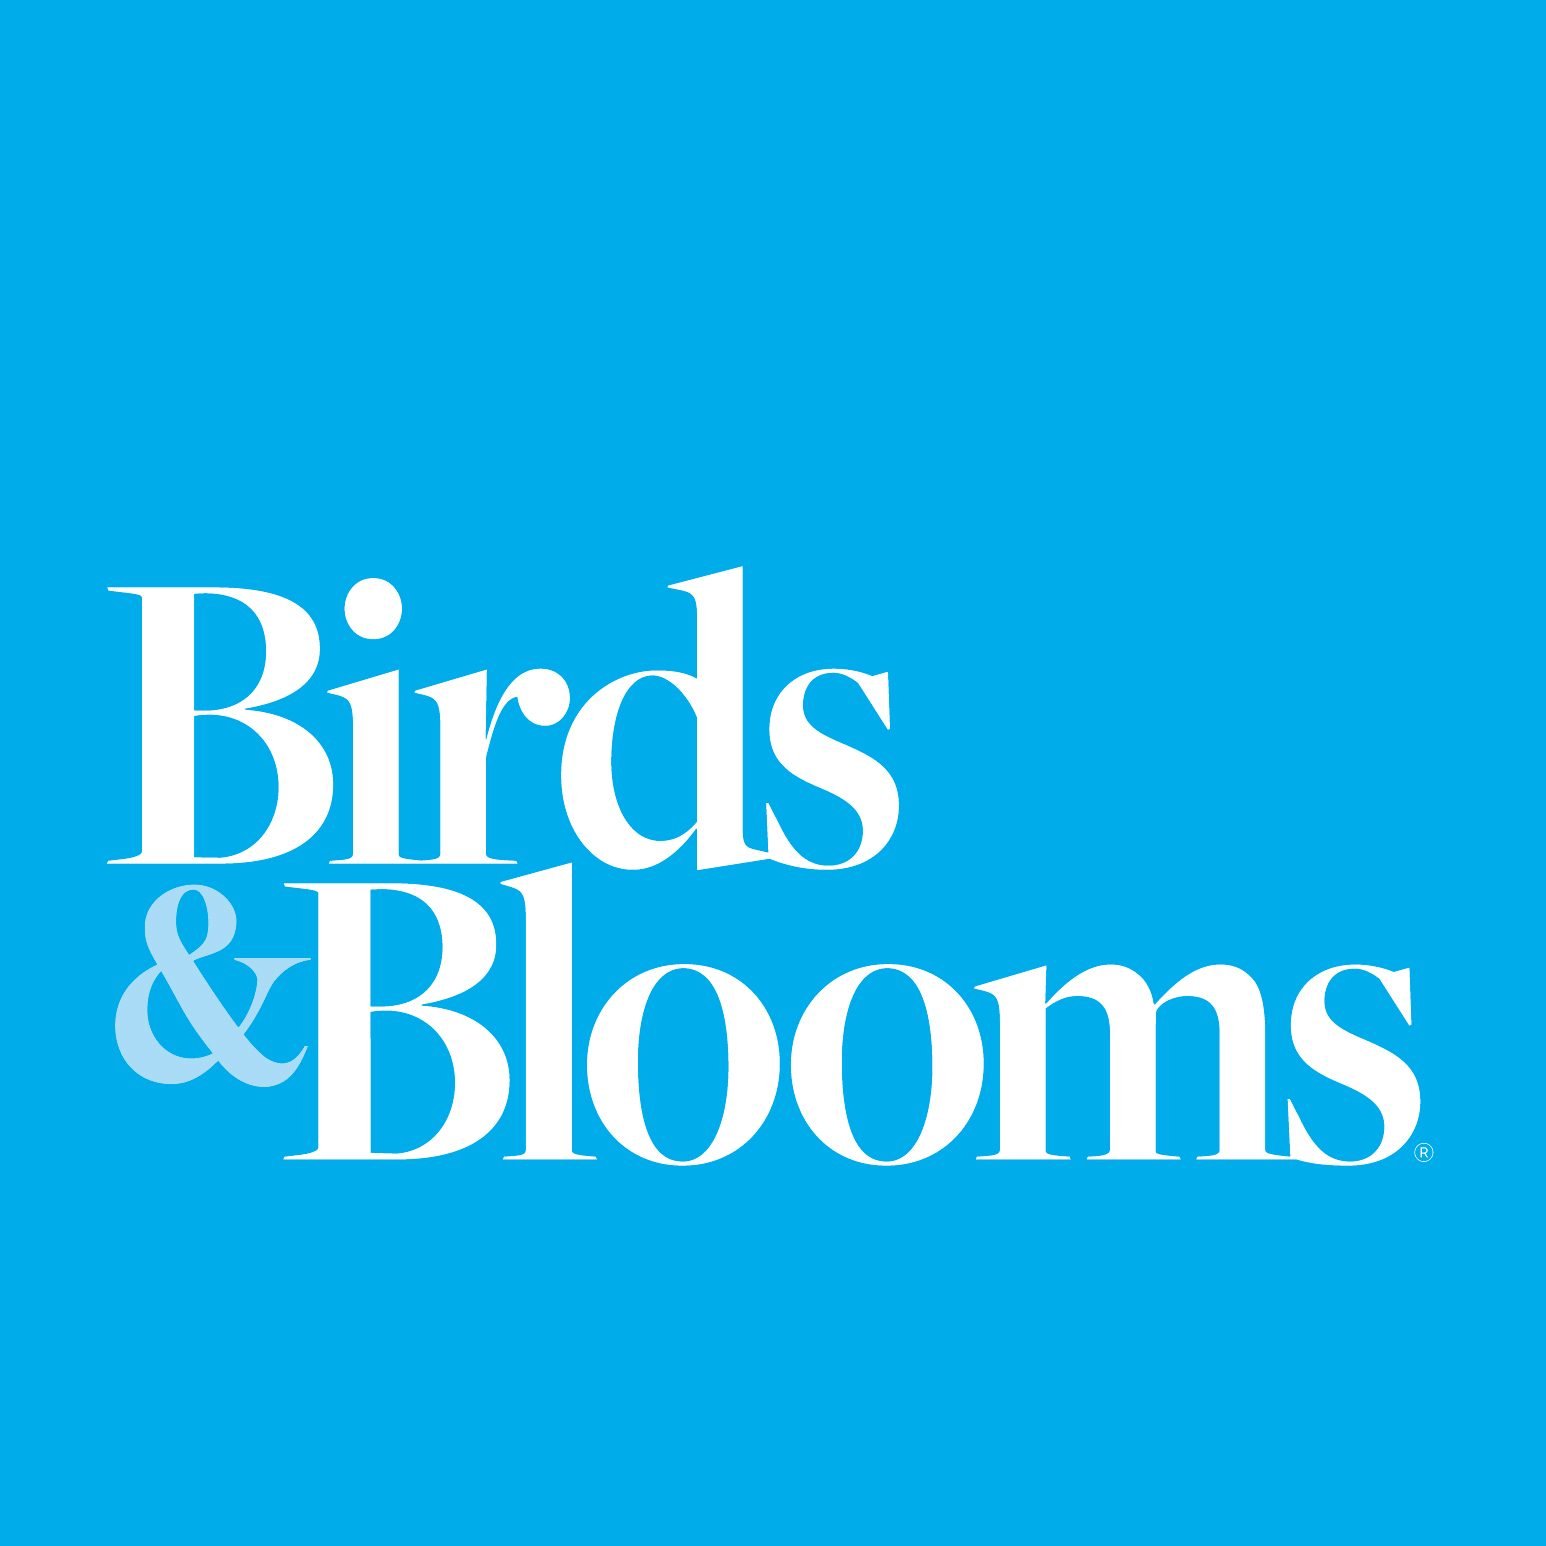 《Birds and Blooms》是一个介绍有关后院植物，鸟类，蝴蝶和其他生物的美国杂志。